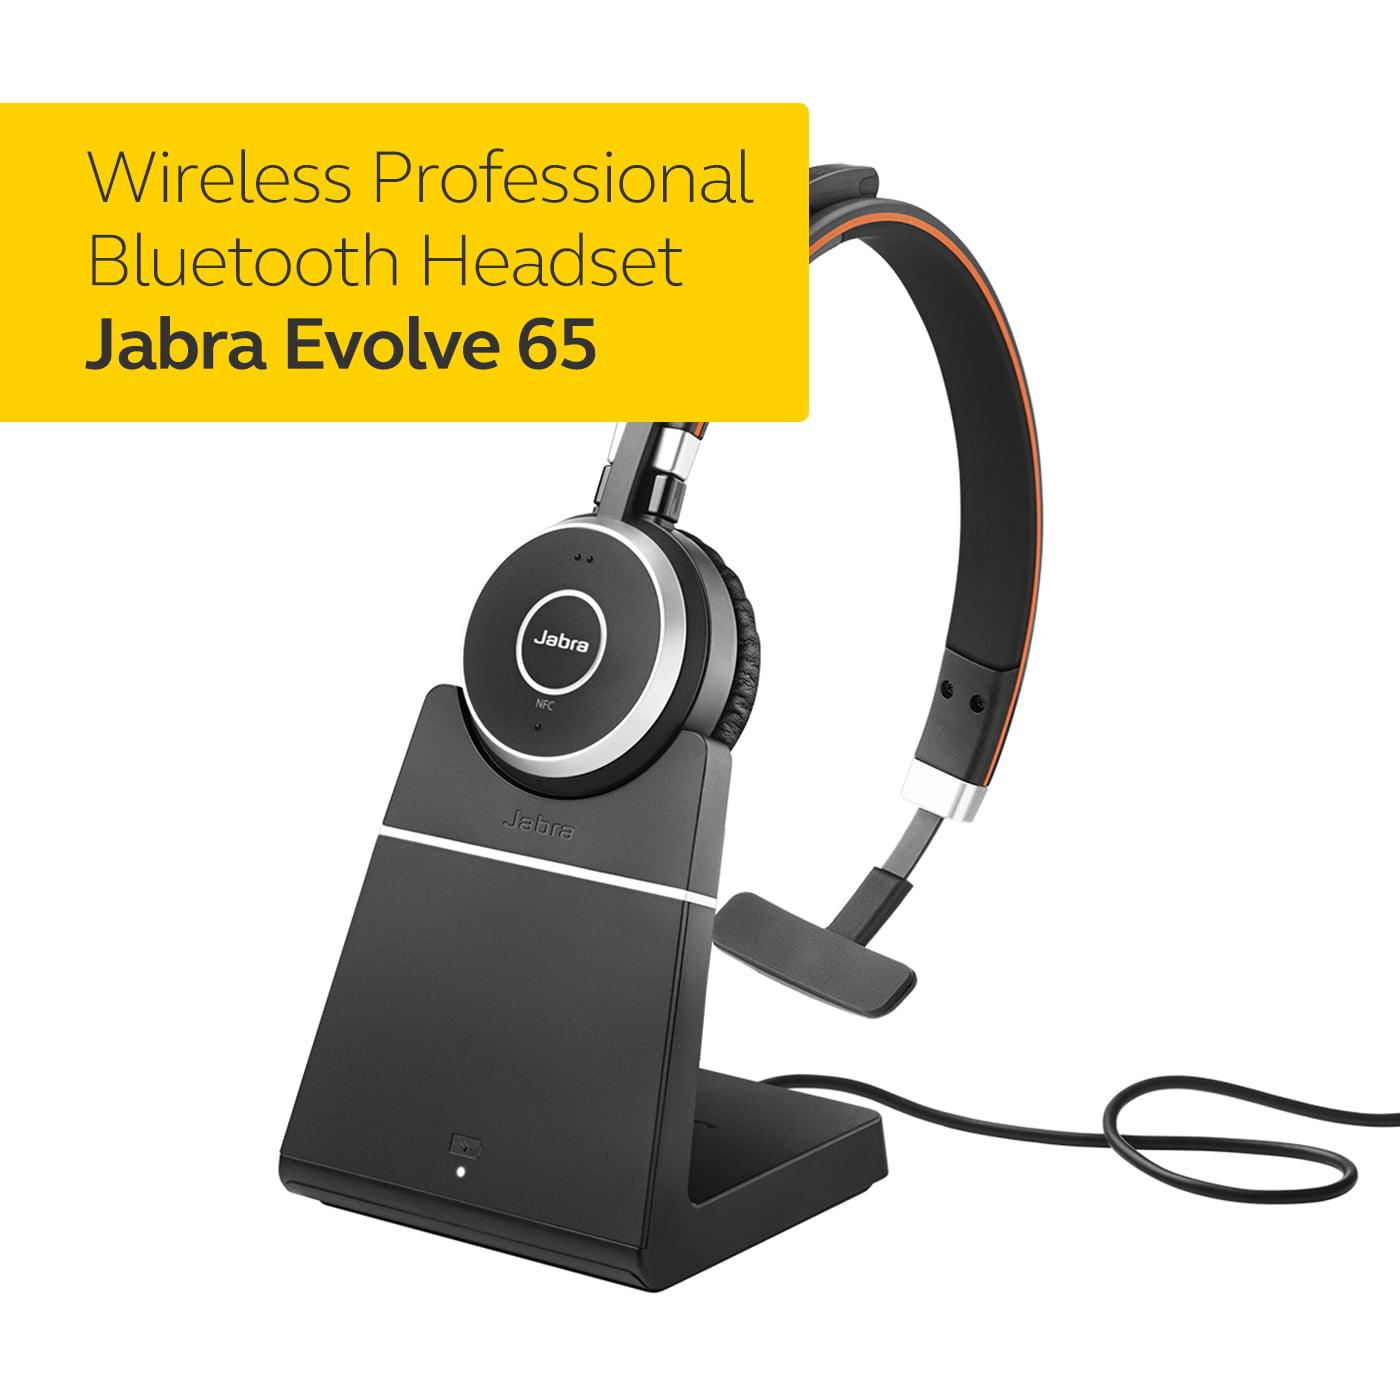 Jabra Evolve 65 MS stereo. Jabra Evolve 65 UC. А Jabra Evolve 65 МС mono. Jabra Evolve 65 left and right.